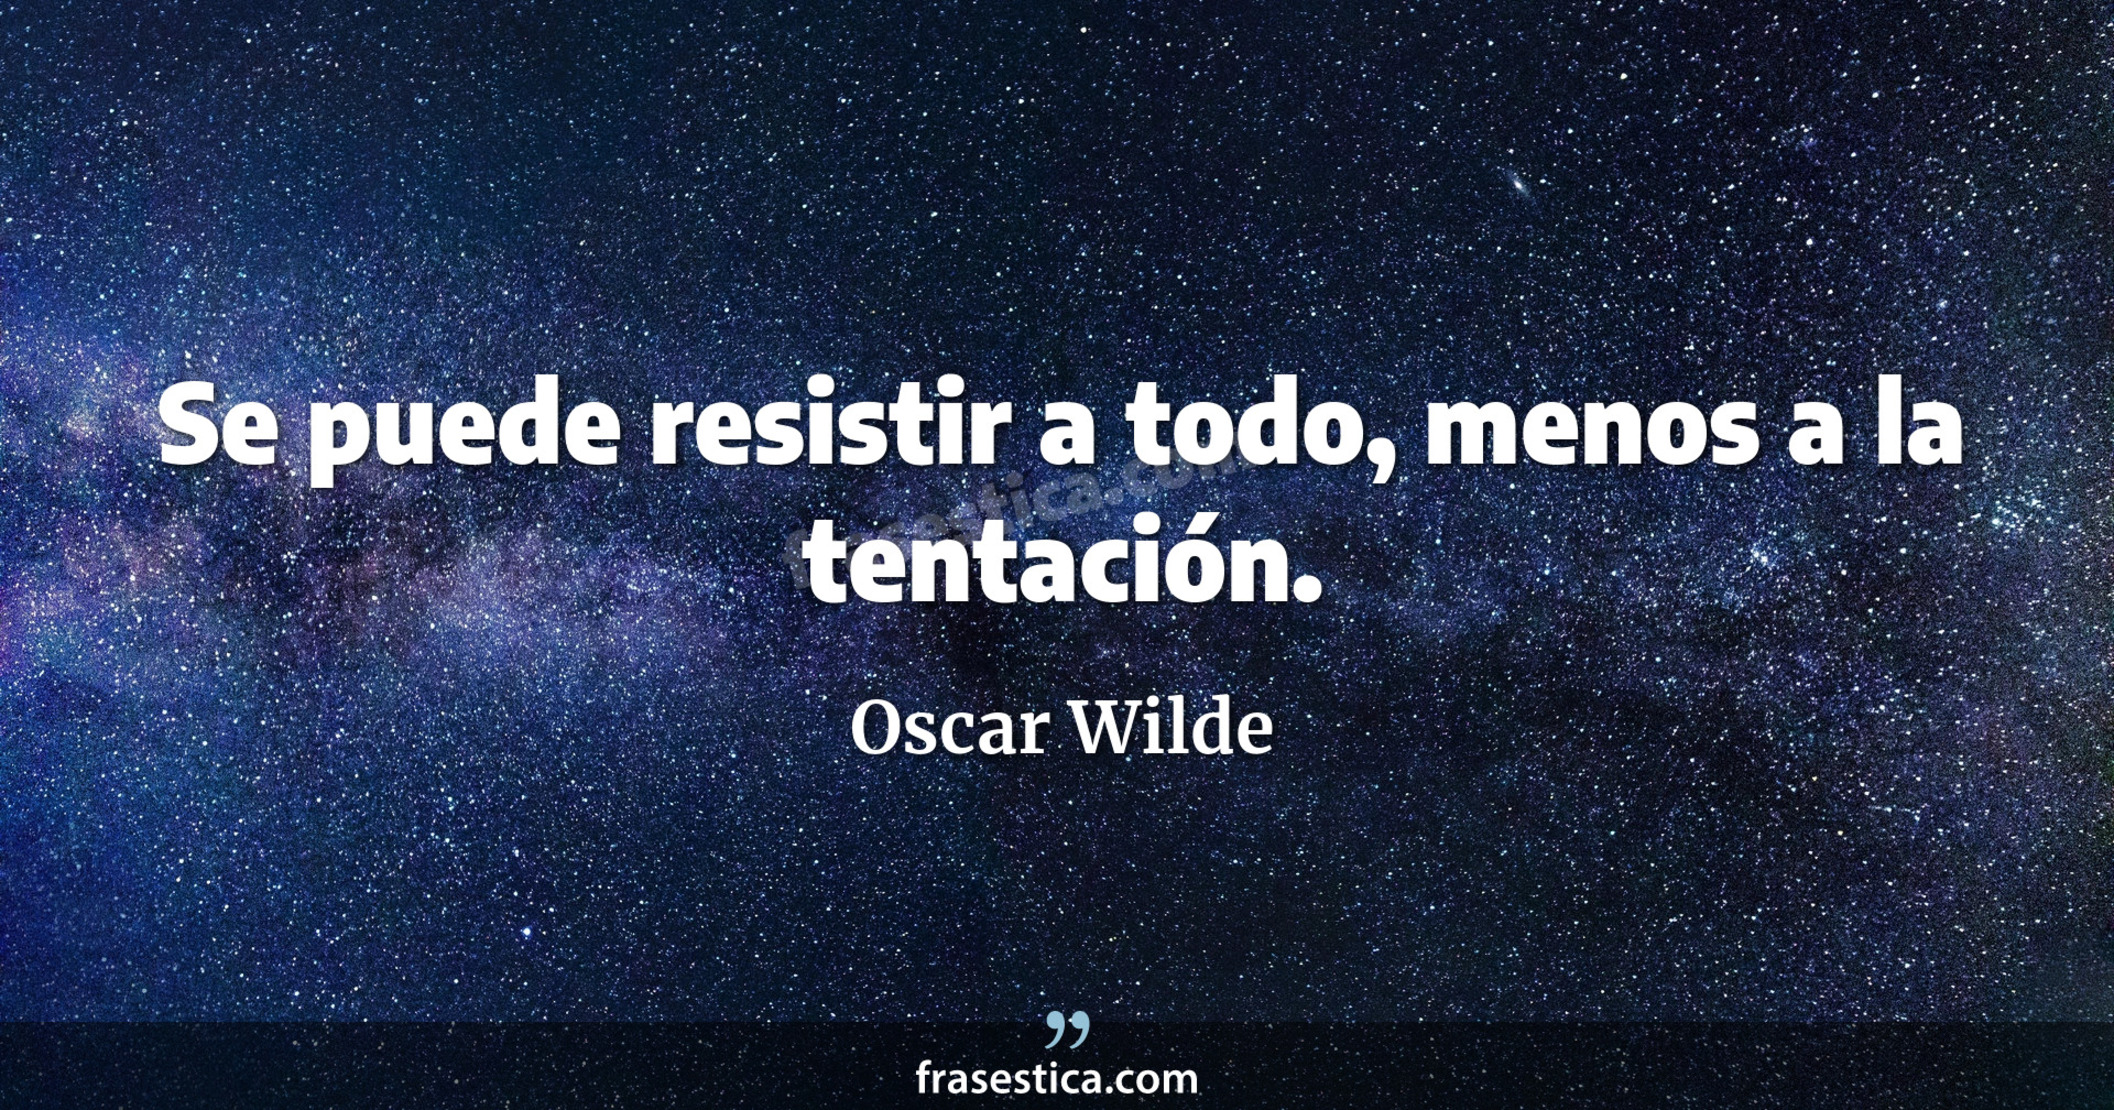 Se puede resistir a todo, menos a la tentación. - Oscar Wilde